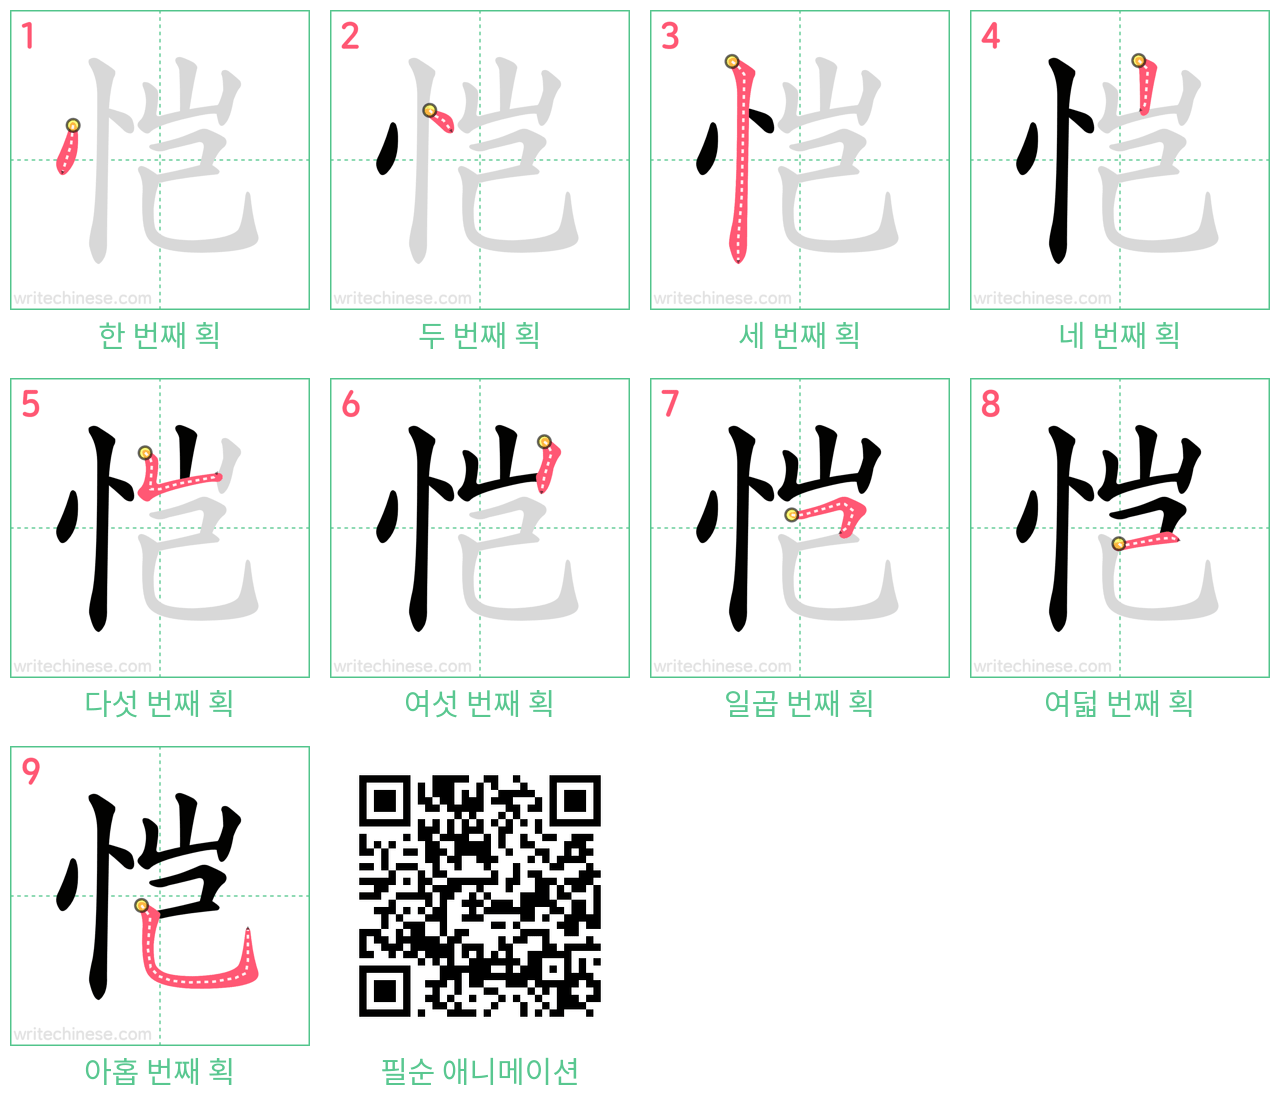 恺 step-by-step stroke order diagrams